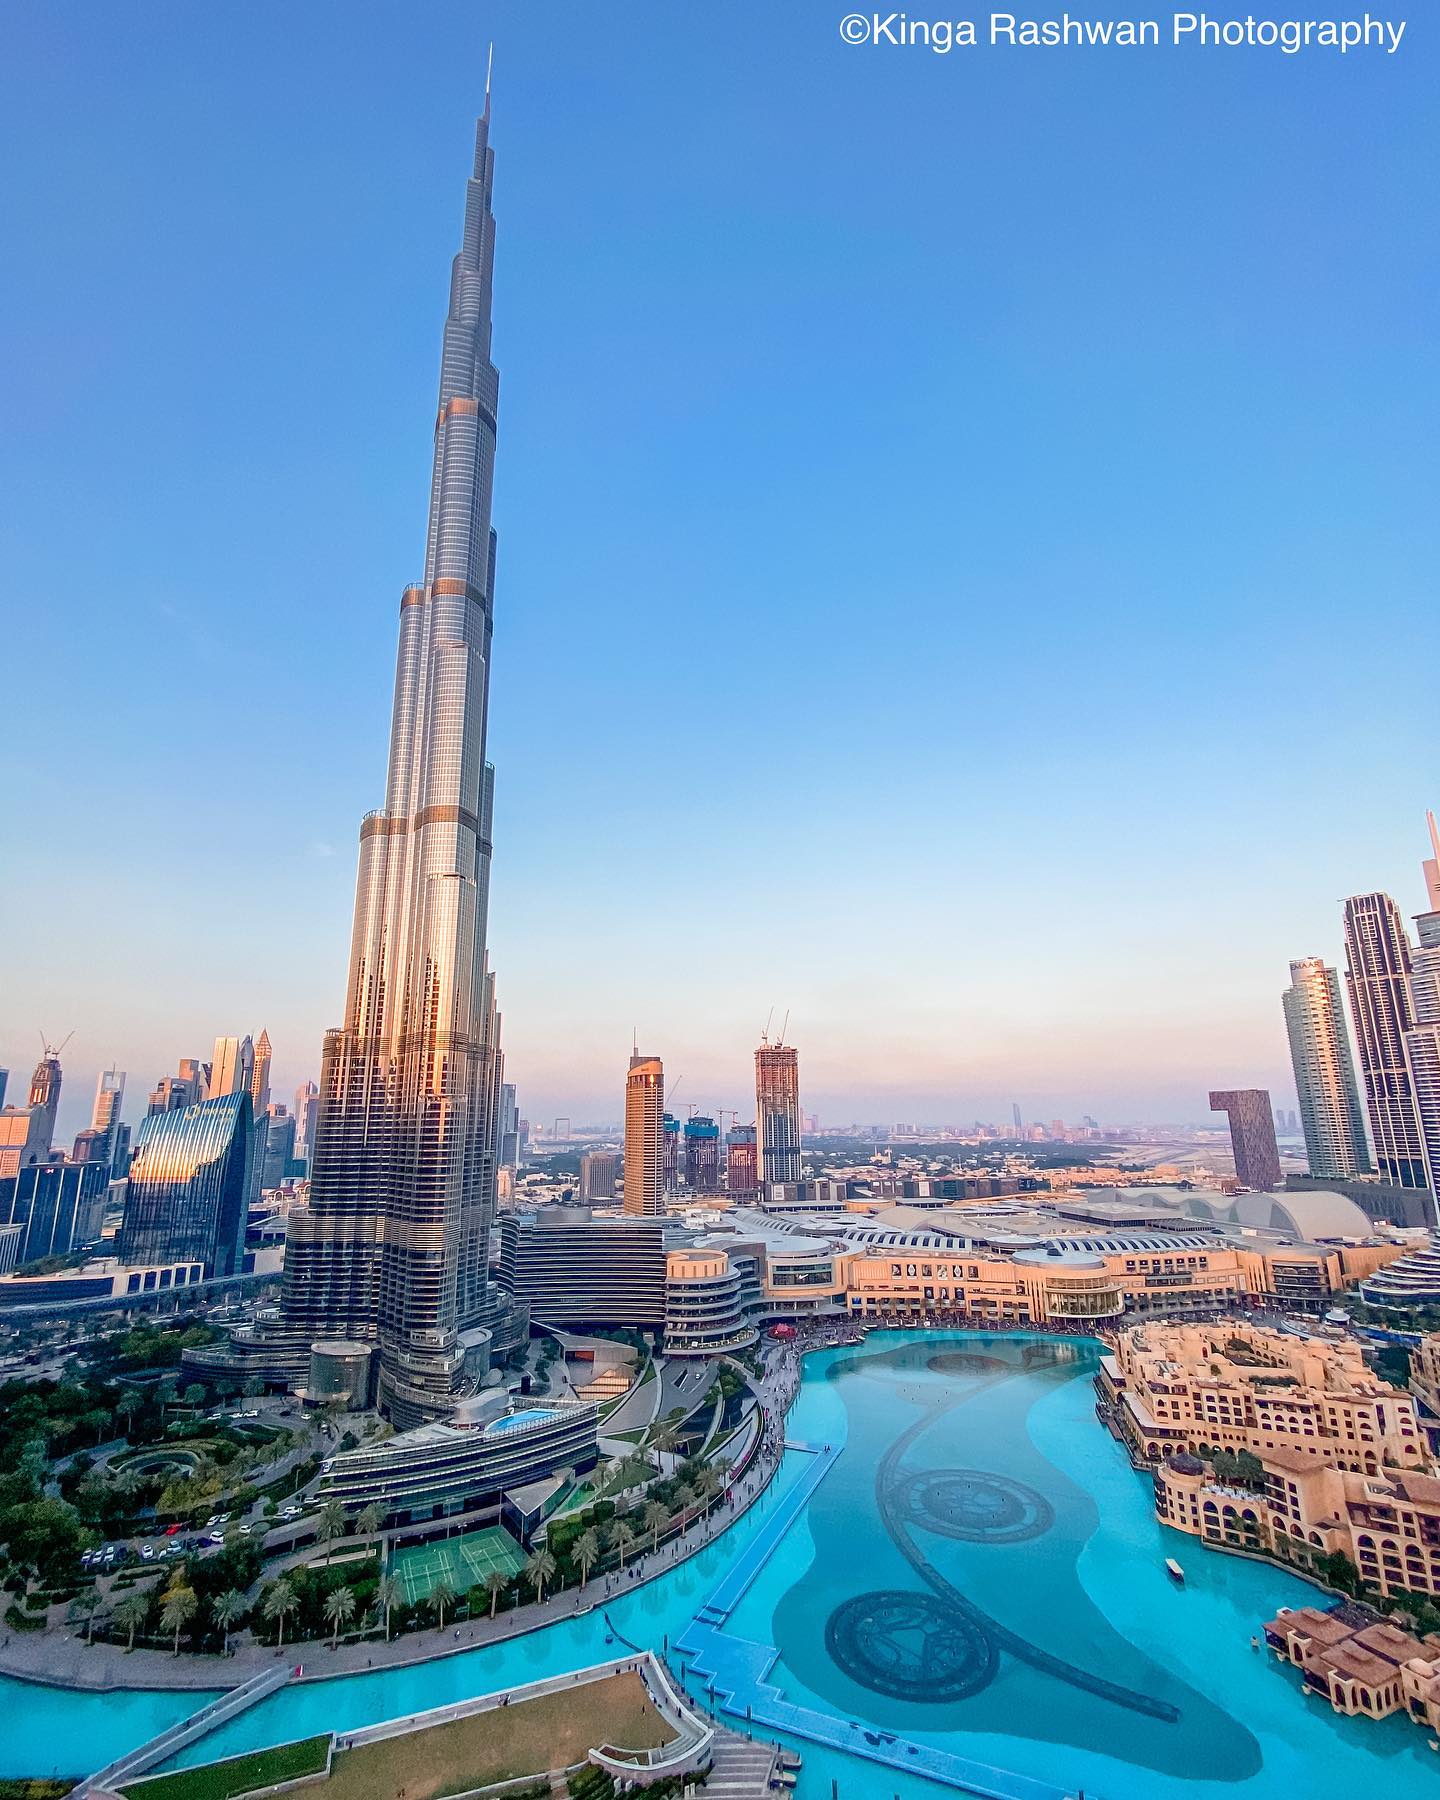 Burj Khalifa o wschodzie słońca 💖🤩
.
Czy wiesz że Burj Khalifa miała nazywać się Burj Dubaj? Nazwa została zmieniona na prośbe Emira Abu Dhabi który wspierał finansowo wtedy Dubaj 😉
.
.

#burjkhalifadubai #indubai #dubaigirls #dubailife🇦🇪 #mydubai #burjkhalifa #zjednoczoneemiratyarabskie #mydubaipics #gogogirls #zwiedzanie #wakacjewdubaju #kobiecafotoszkoła  #wearetravelgirls #bloggerlifephotos #travelphotography  #historiaemiratow #ciekawostkioemiratach #polkinaobczyznie #matkafotografka #whatsondubai #dubai❤️